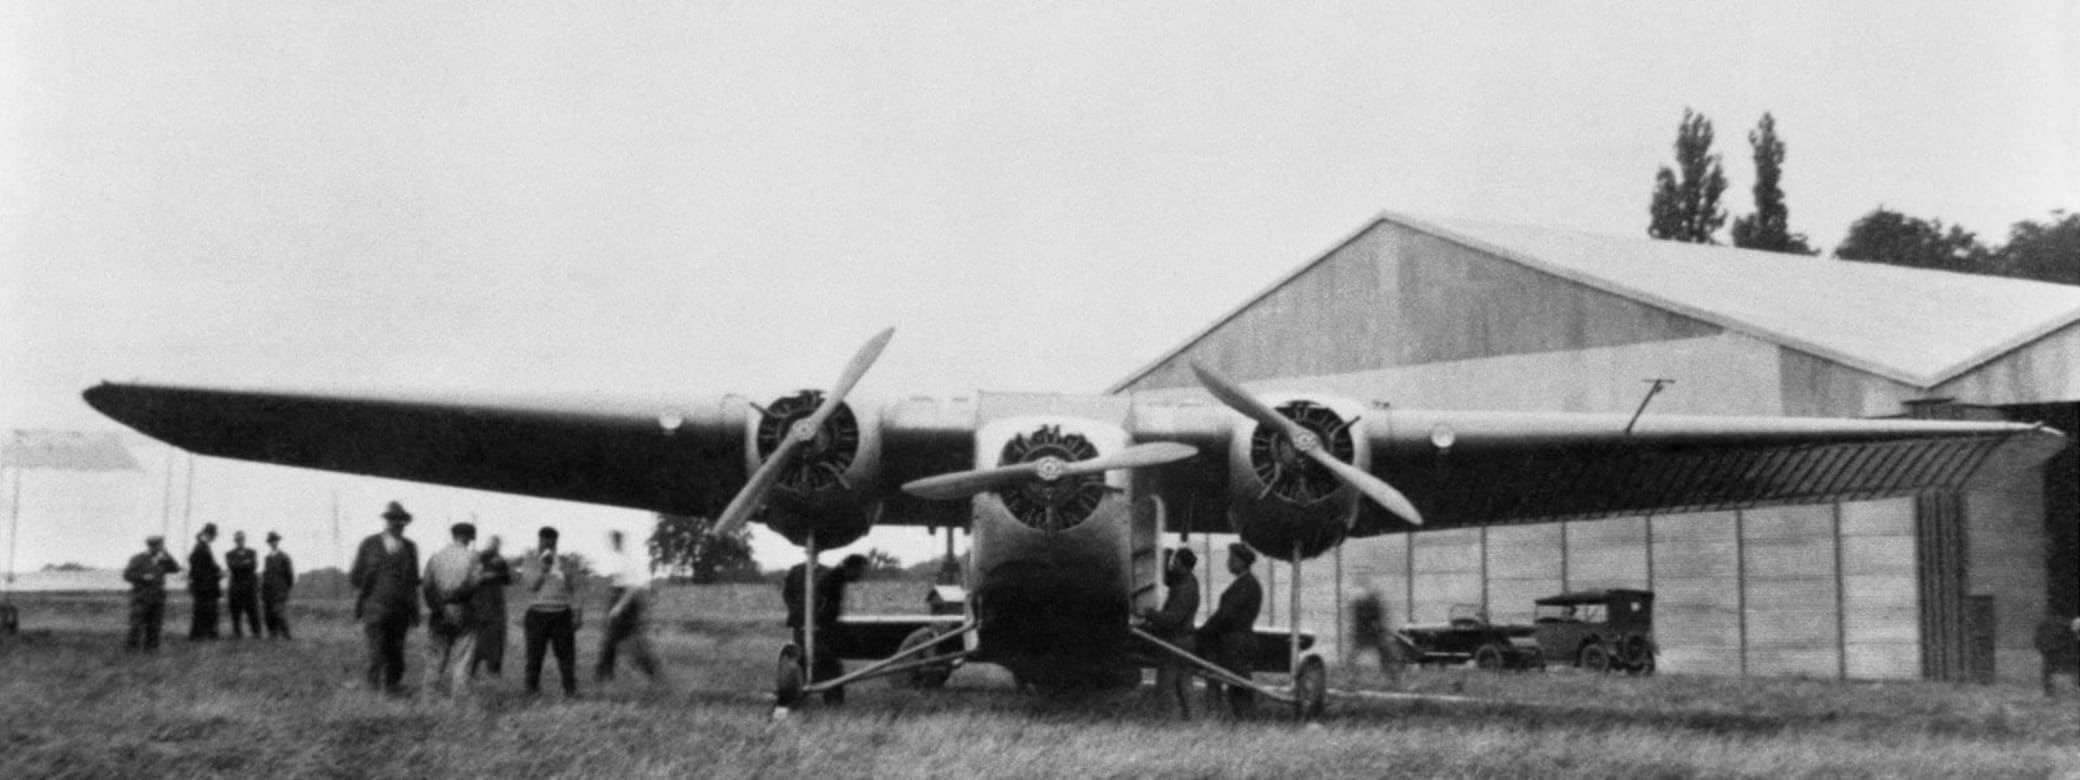 MB 60, prototype de trimoteur postal, au sol devant un hangar.